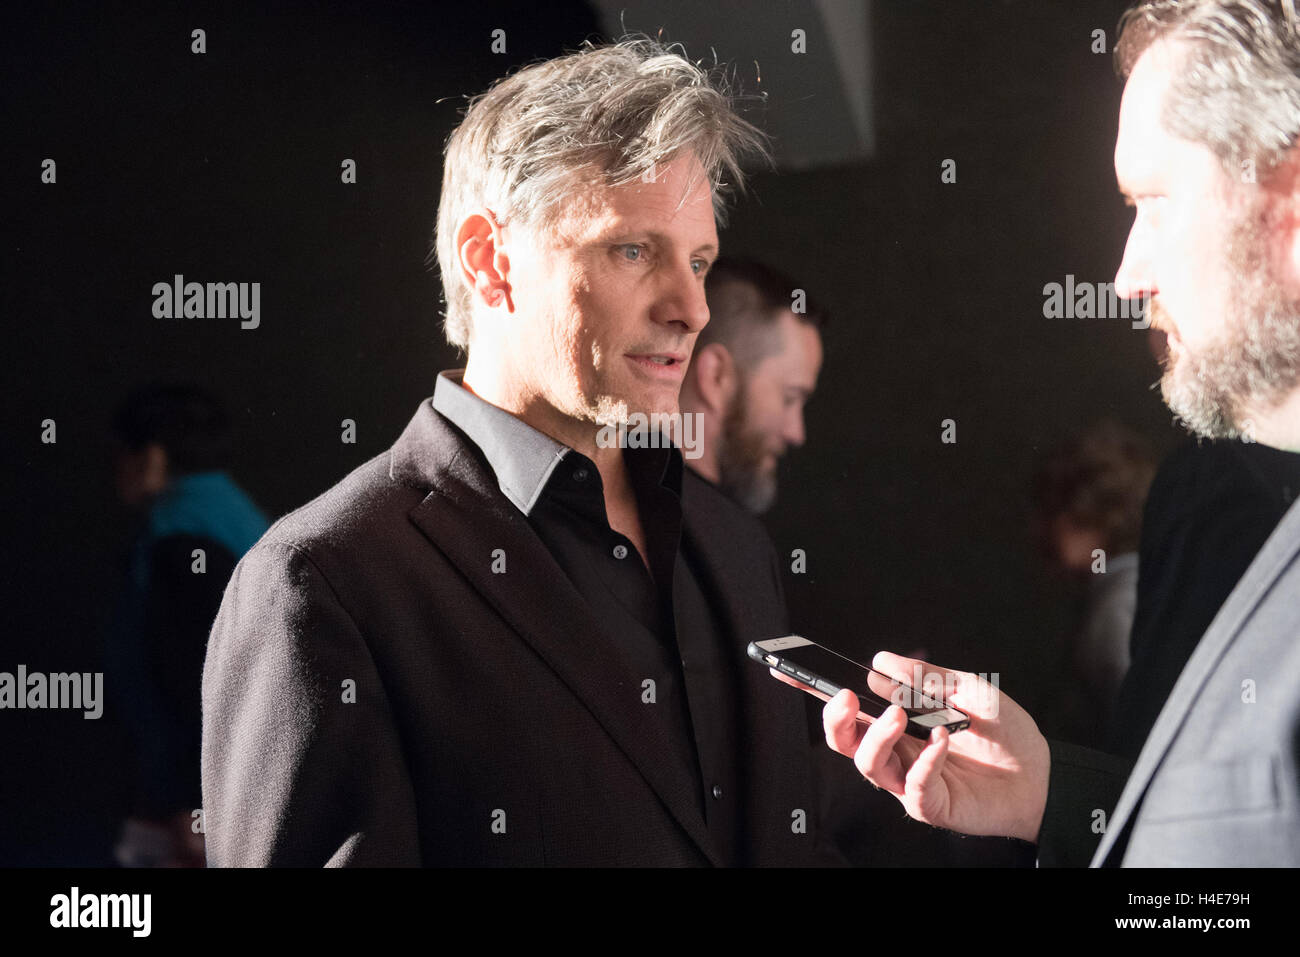 Schauspieler Vigo Mortensen interviewt auf dem Seattle International Film Festival (SIFF) Hommage an Viggo Mortensen und Red Carpet Premiere von Kapitän Fantastic am 11. Juni 2016 in Seattle, Washington. Stockfoto